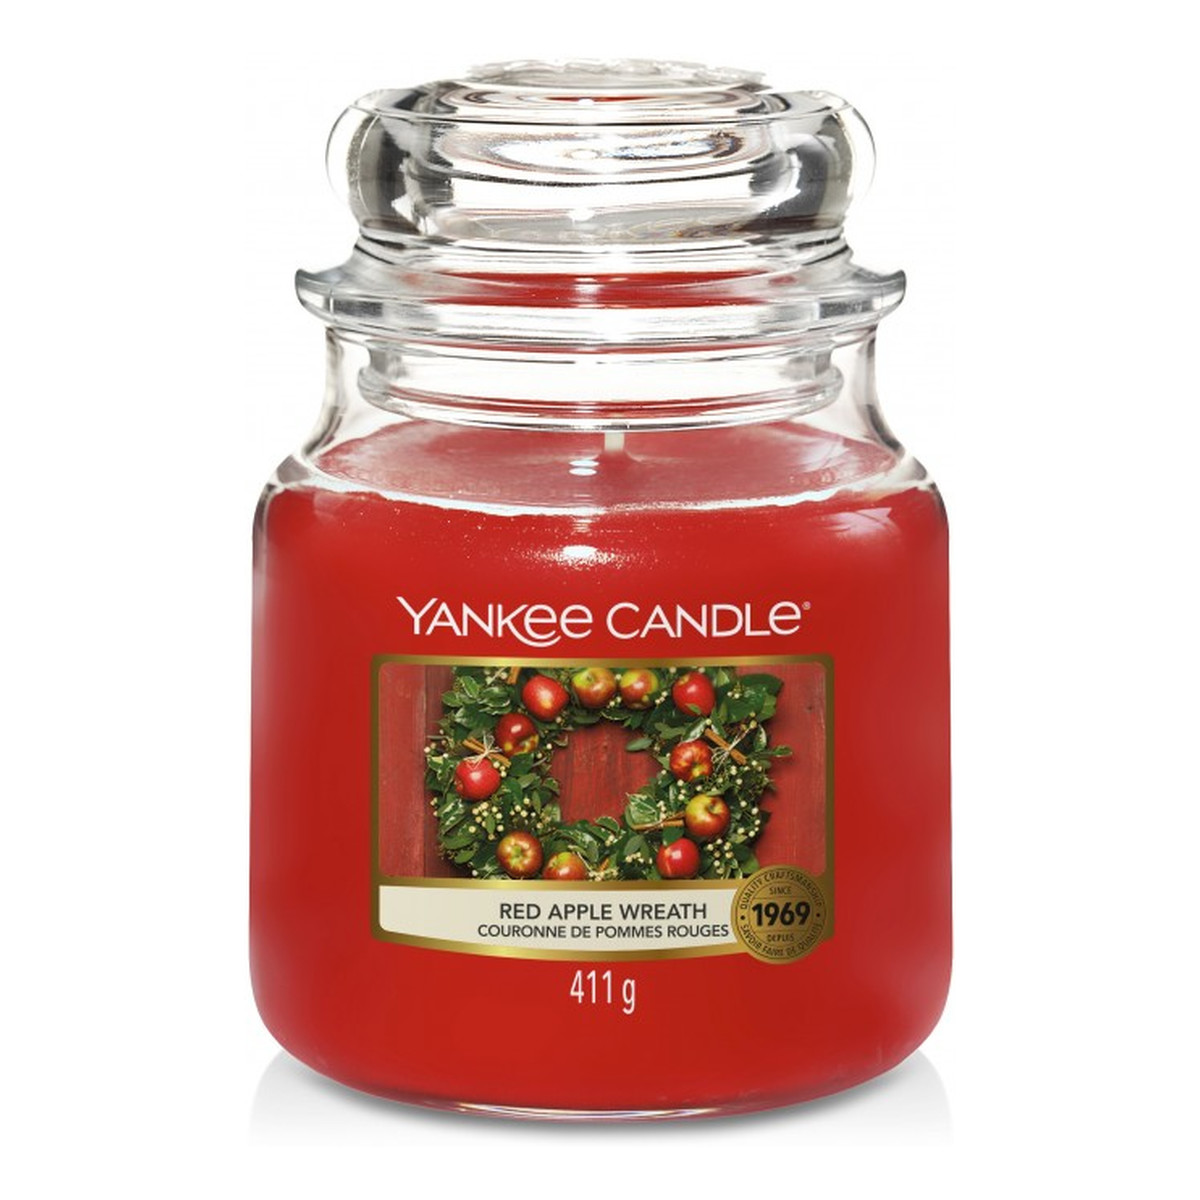 Yankee Candle Świeca zapachowa średni słój red apple wreath 411g